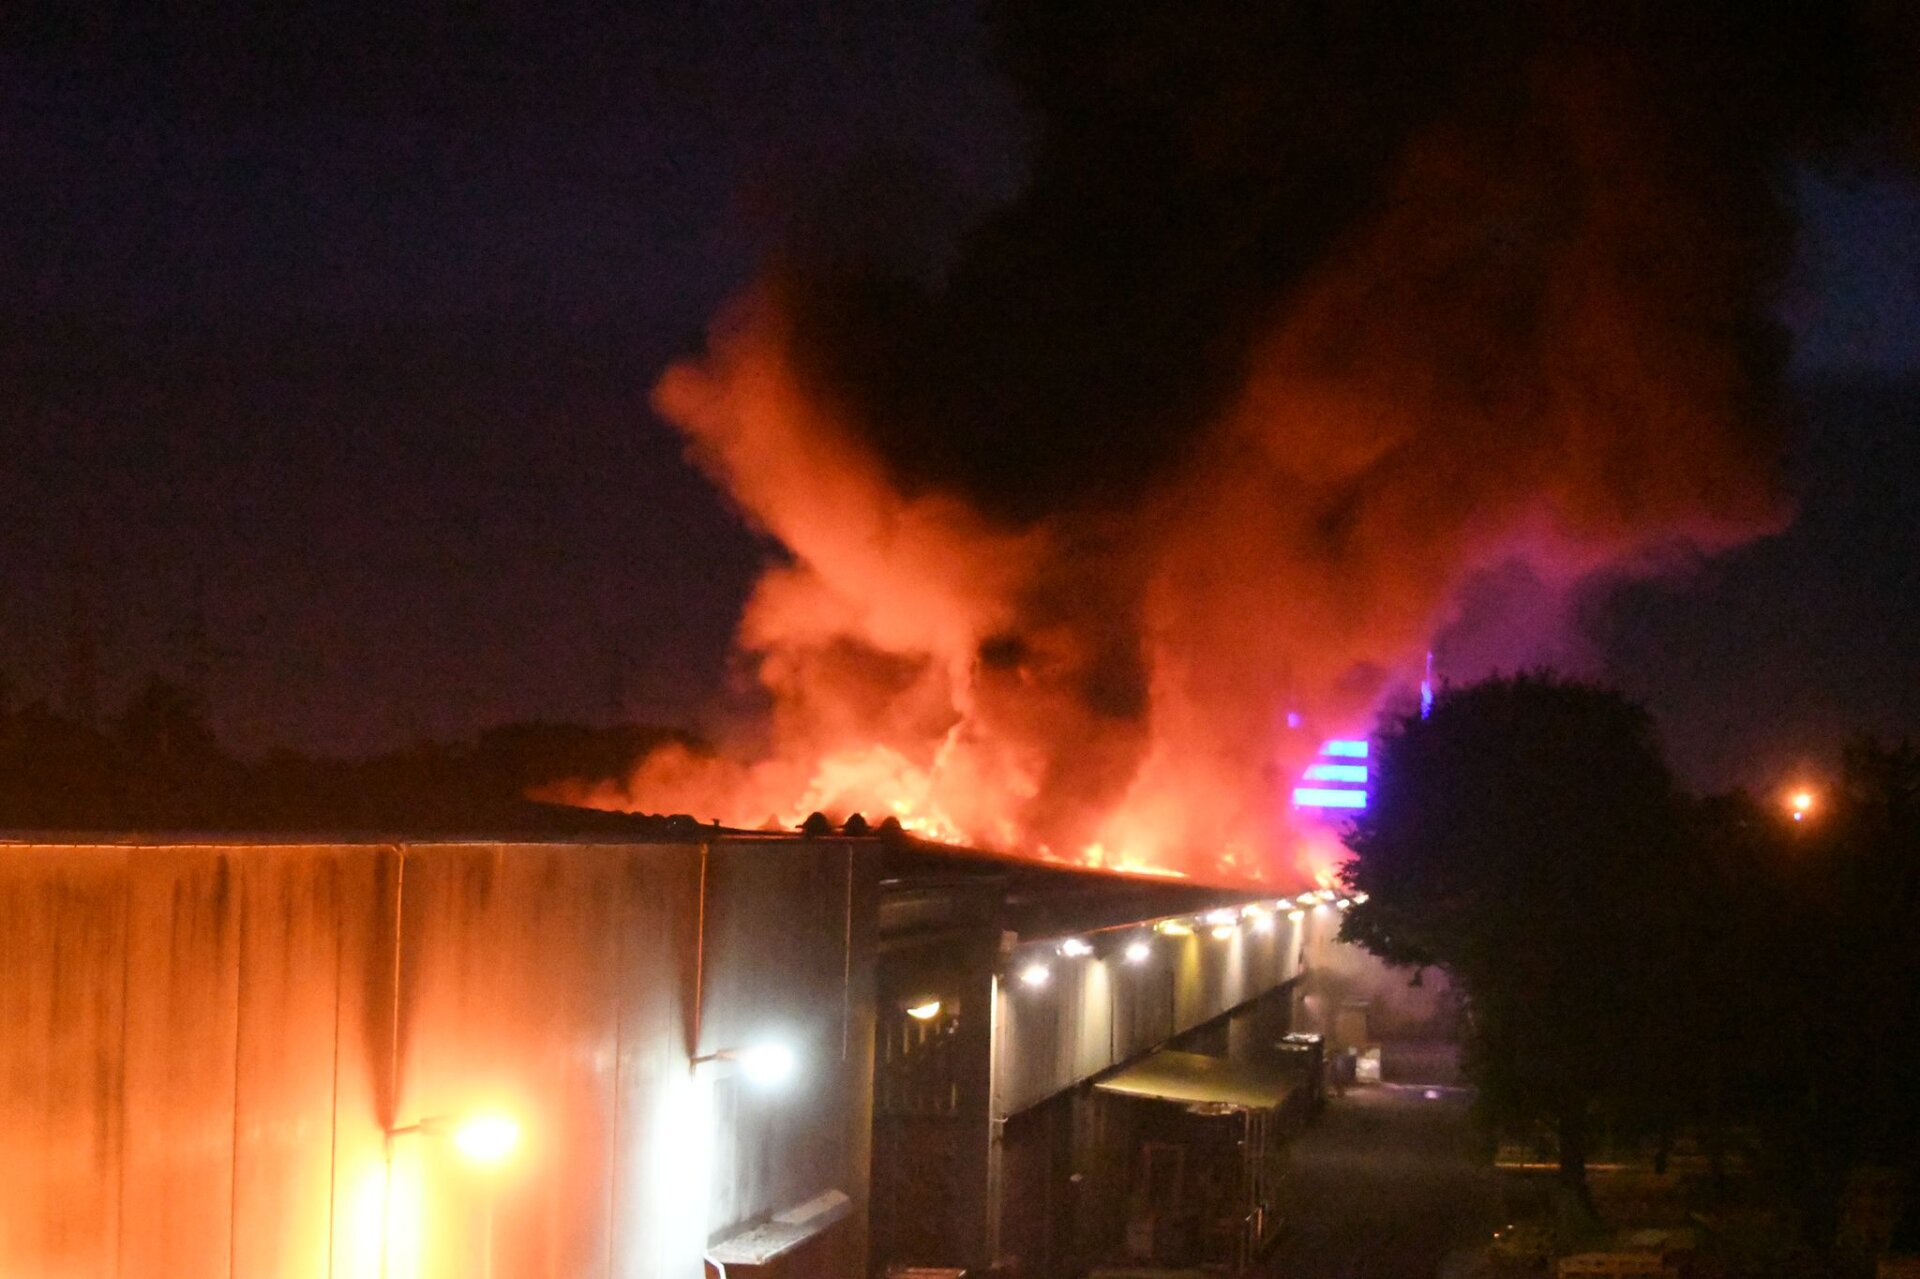 Le fiamme, visibili a chilometri di distanza, stanno divorando una azienda di Brugherio